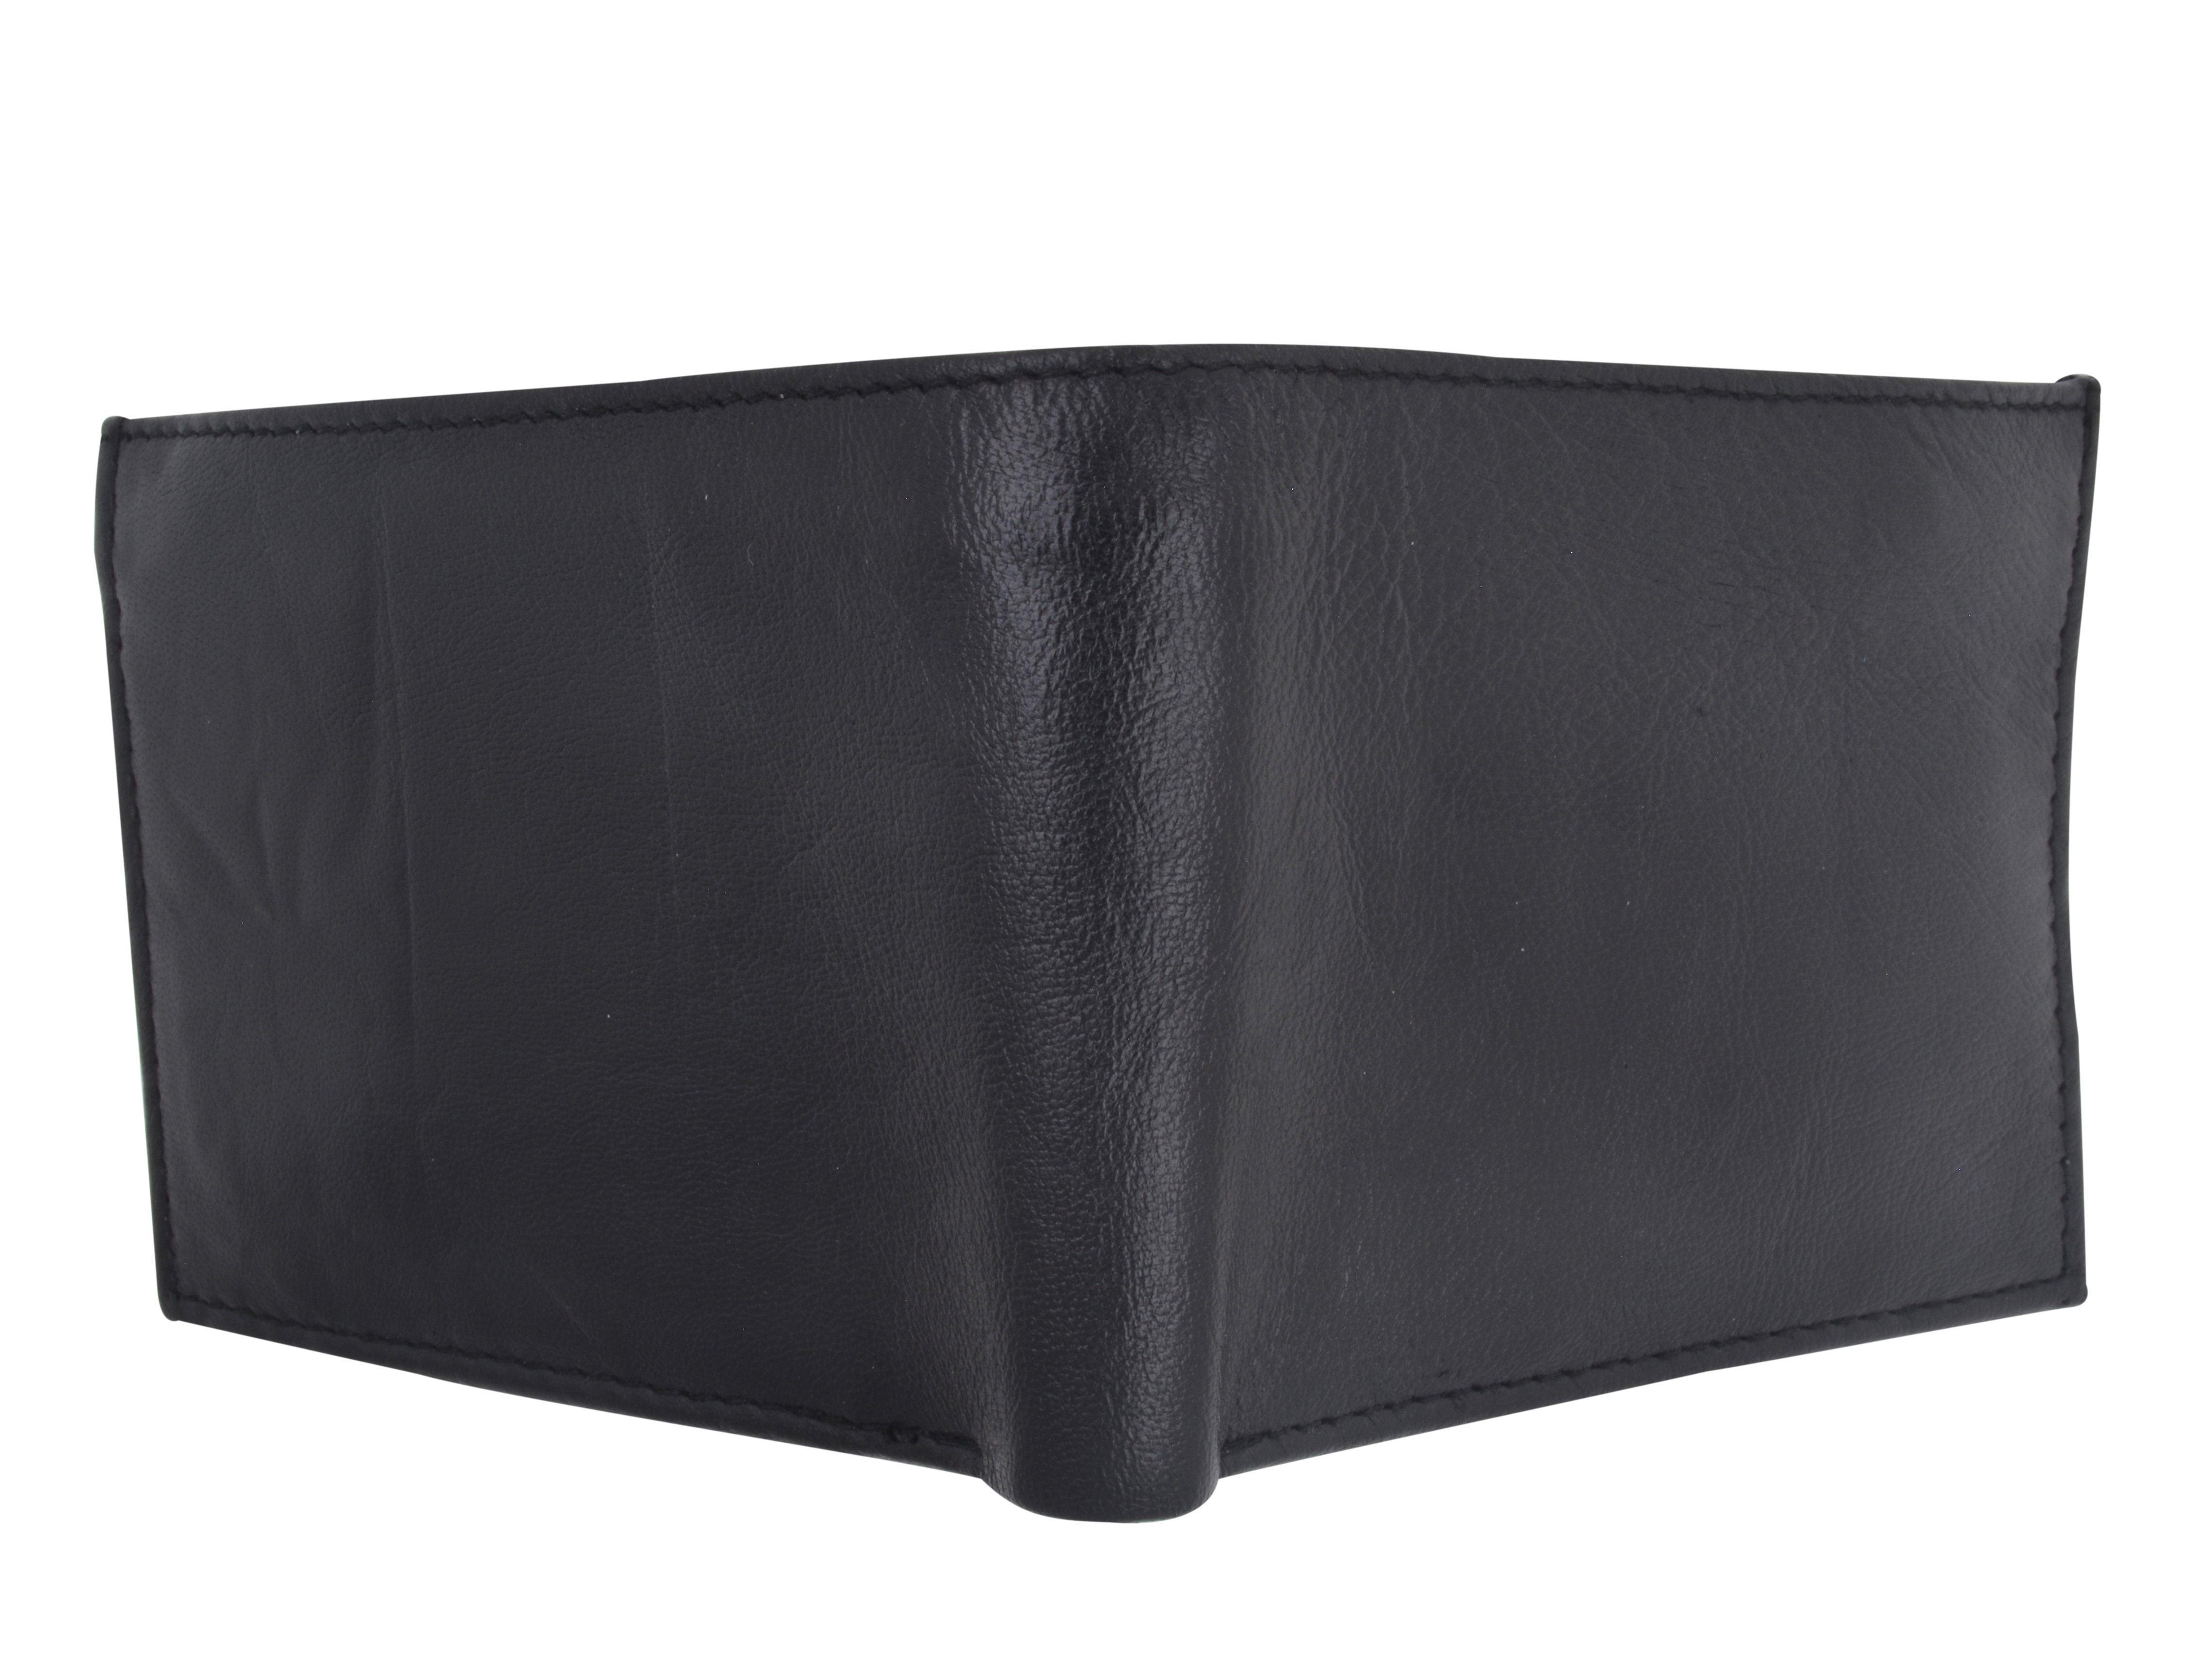 AFONiE Leather Bi Fold Wallet